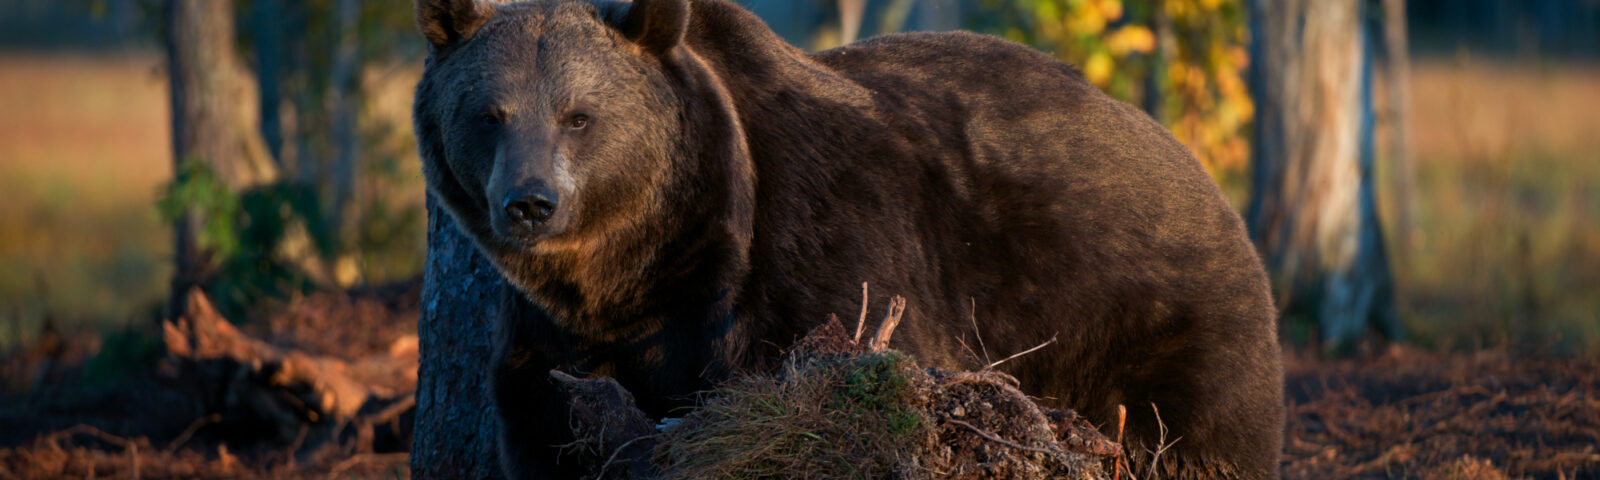 Brun bjørn i skogen og ser rett på kamera